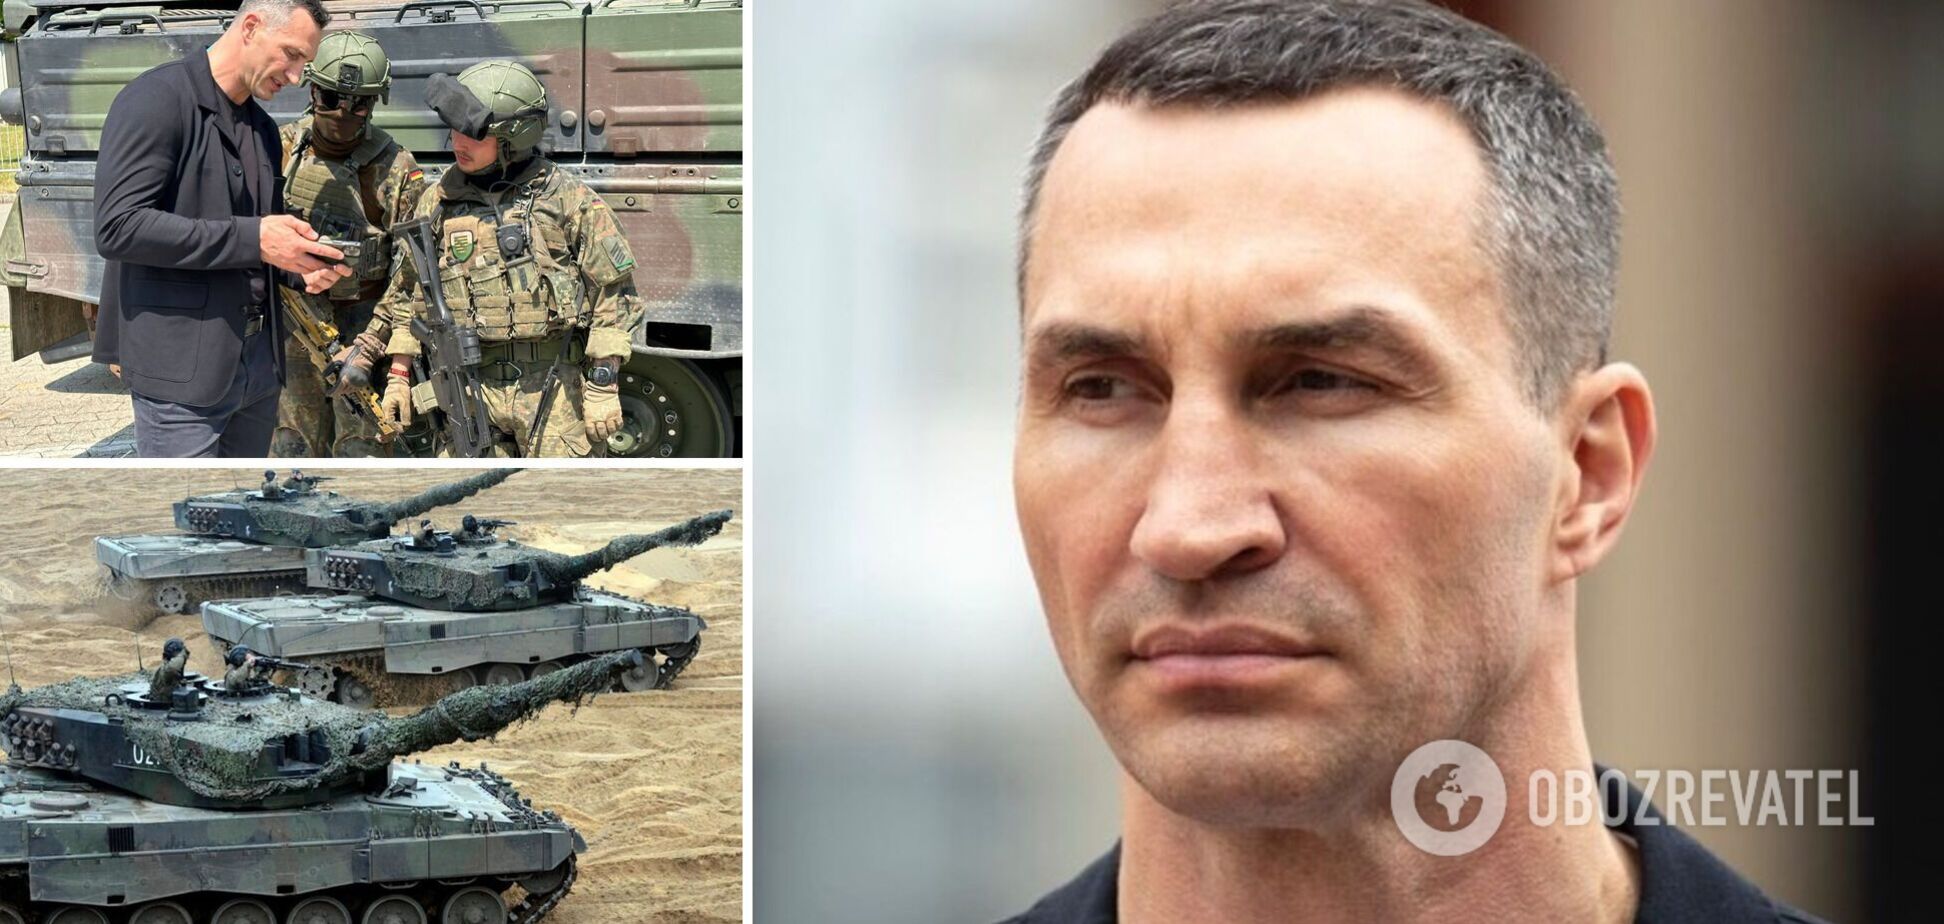 IRIS-T, Leopard, Gepard та багато іншого: Володимир Кличко відвідав велику виставку озброєння в ФРН. Фото і відео